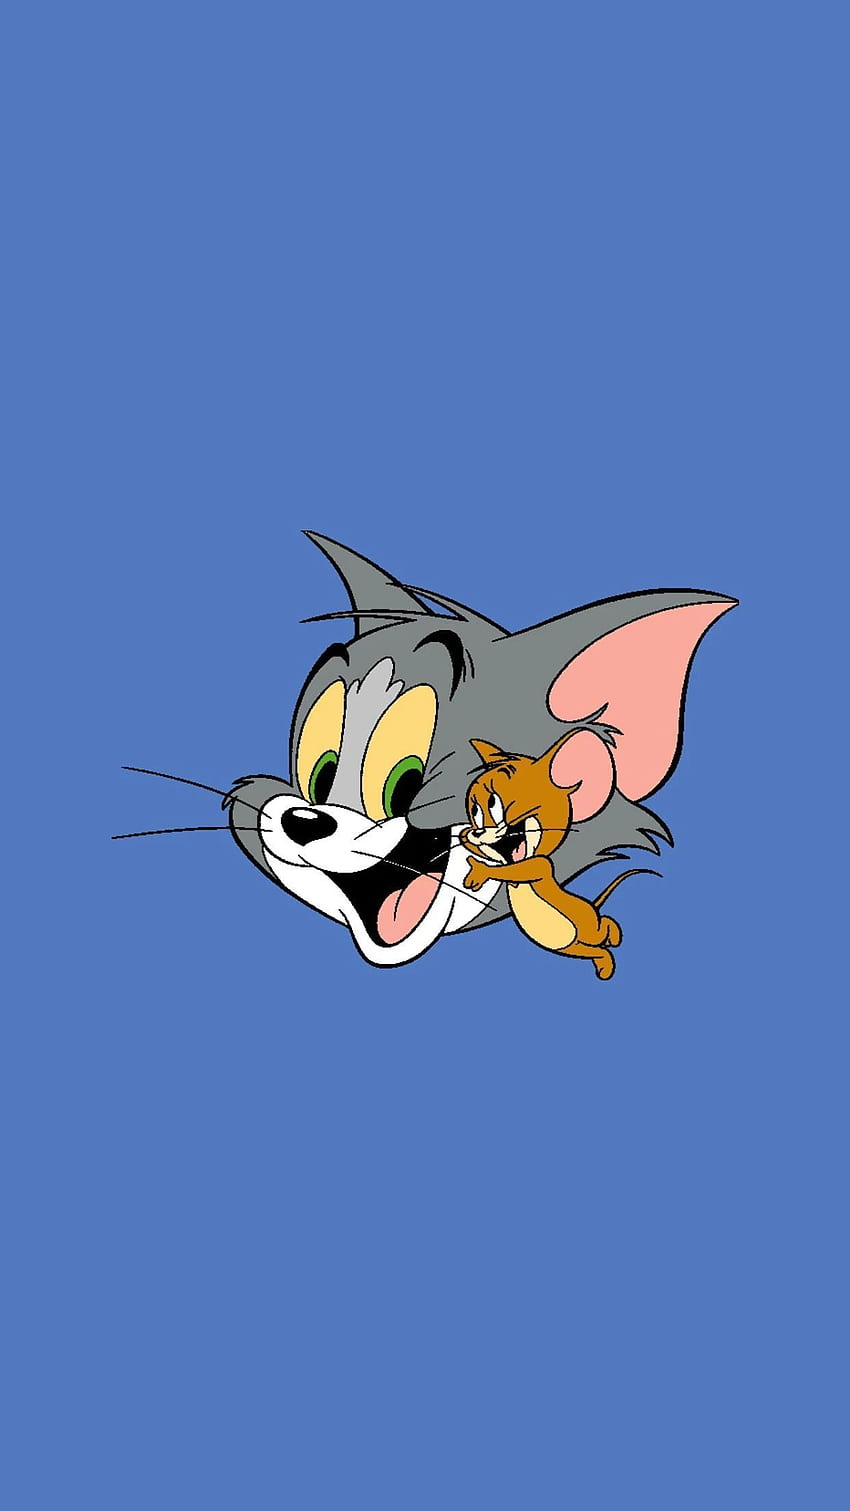 Telepon untuk Memperingati Tom and Jerry's Animator Gene Deitch. Tom dan jerry, Tom dan jerry, Tom dan jerry, Cute Tom and Jerry wallpaper ponsel HD